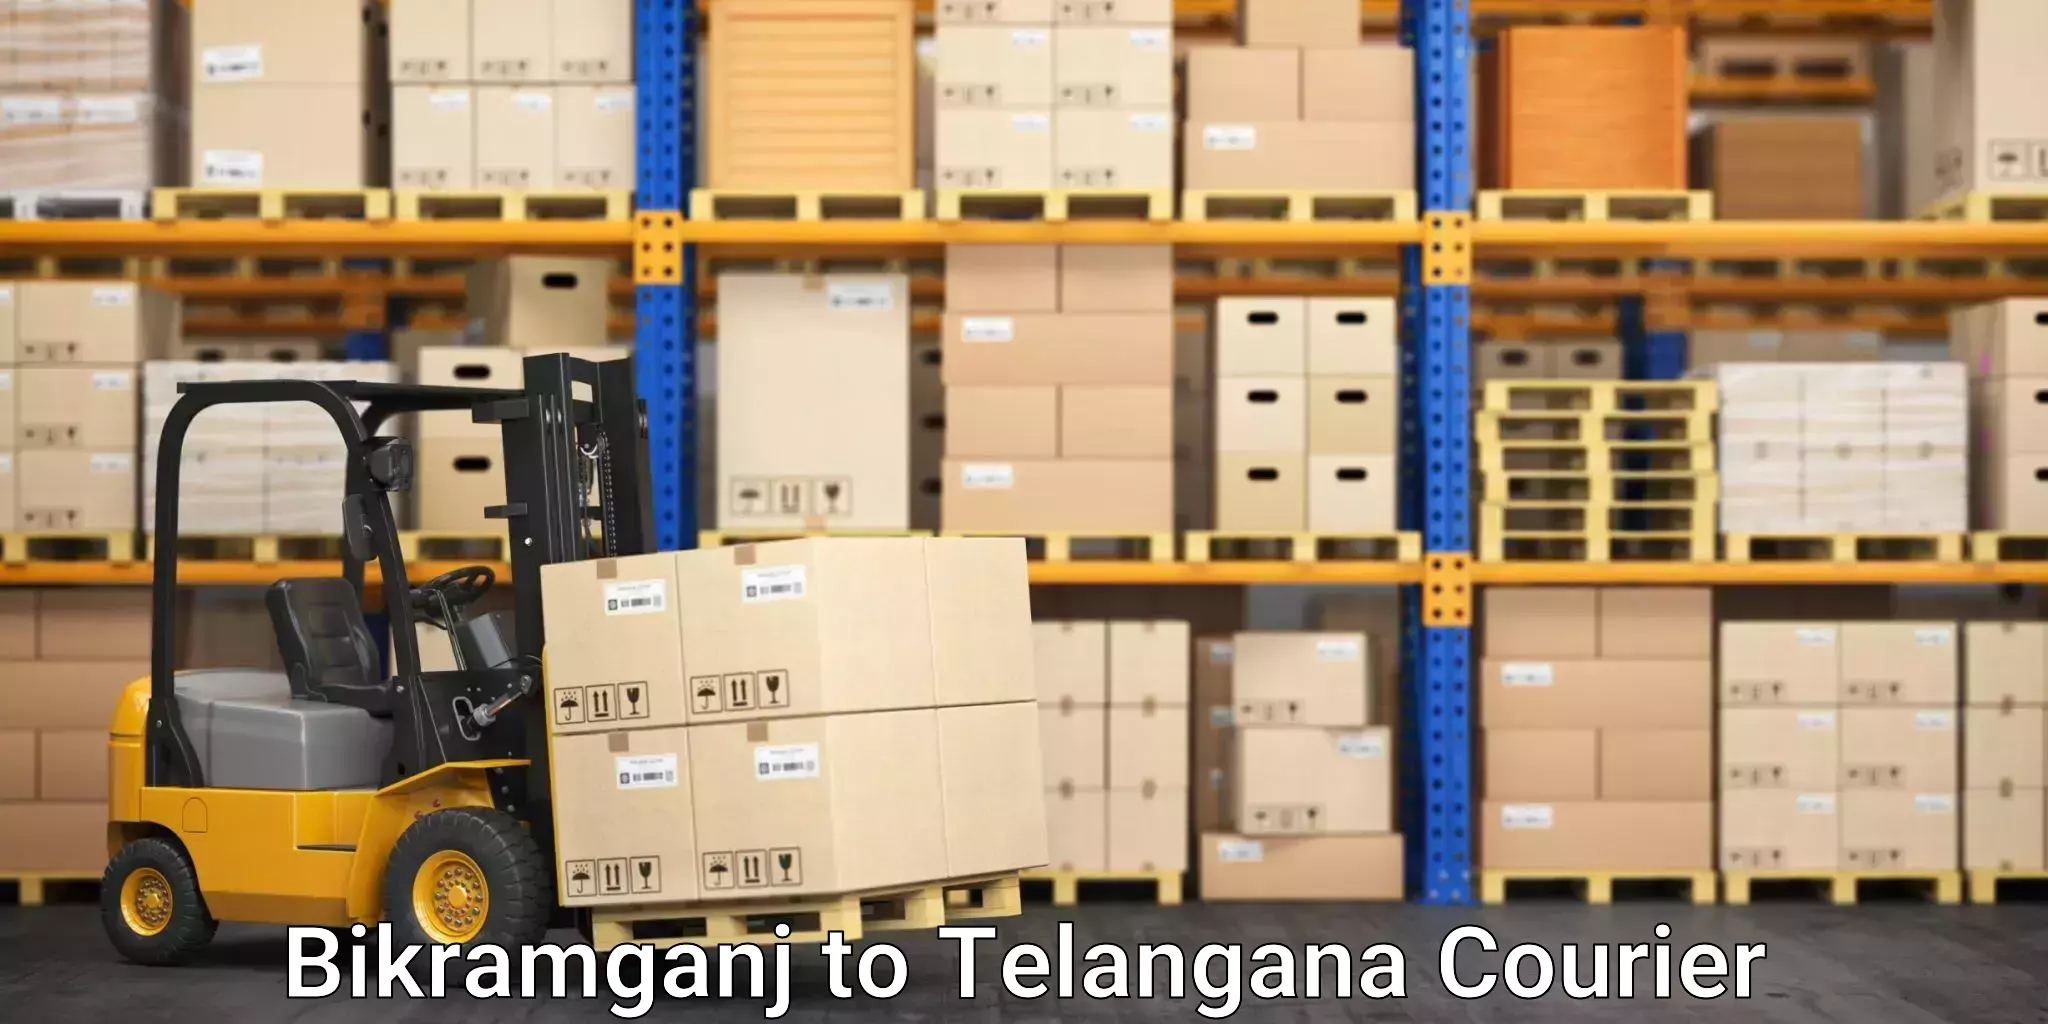 Moving and storage services Bikramganj to Medchal